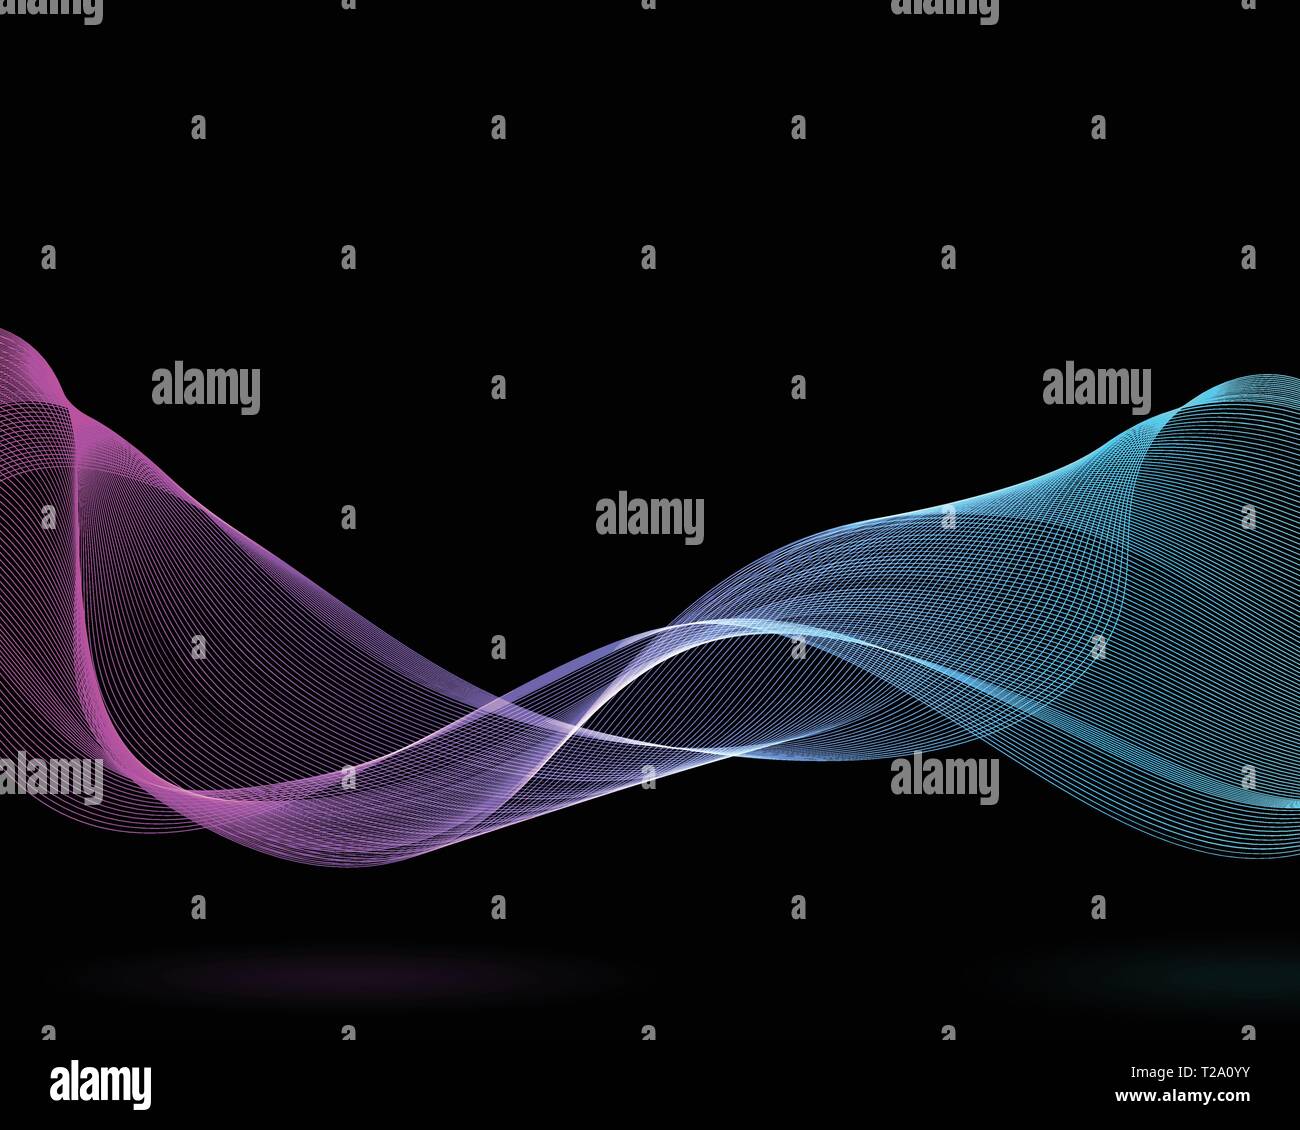 Wellenförmige abstrakt Design in zwei Farben. Ribbon Konzept mit lila und blau Farbverlauf. Schwarz isoliert Hintergrund. Vector Illustration. Stock Vektor